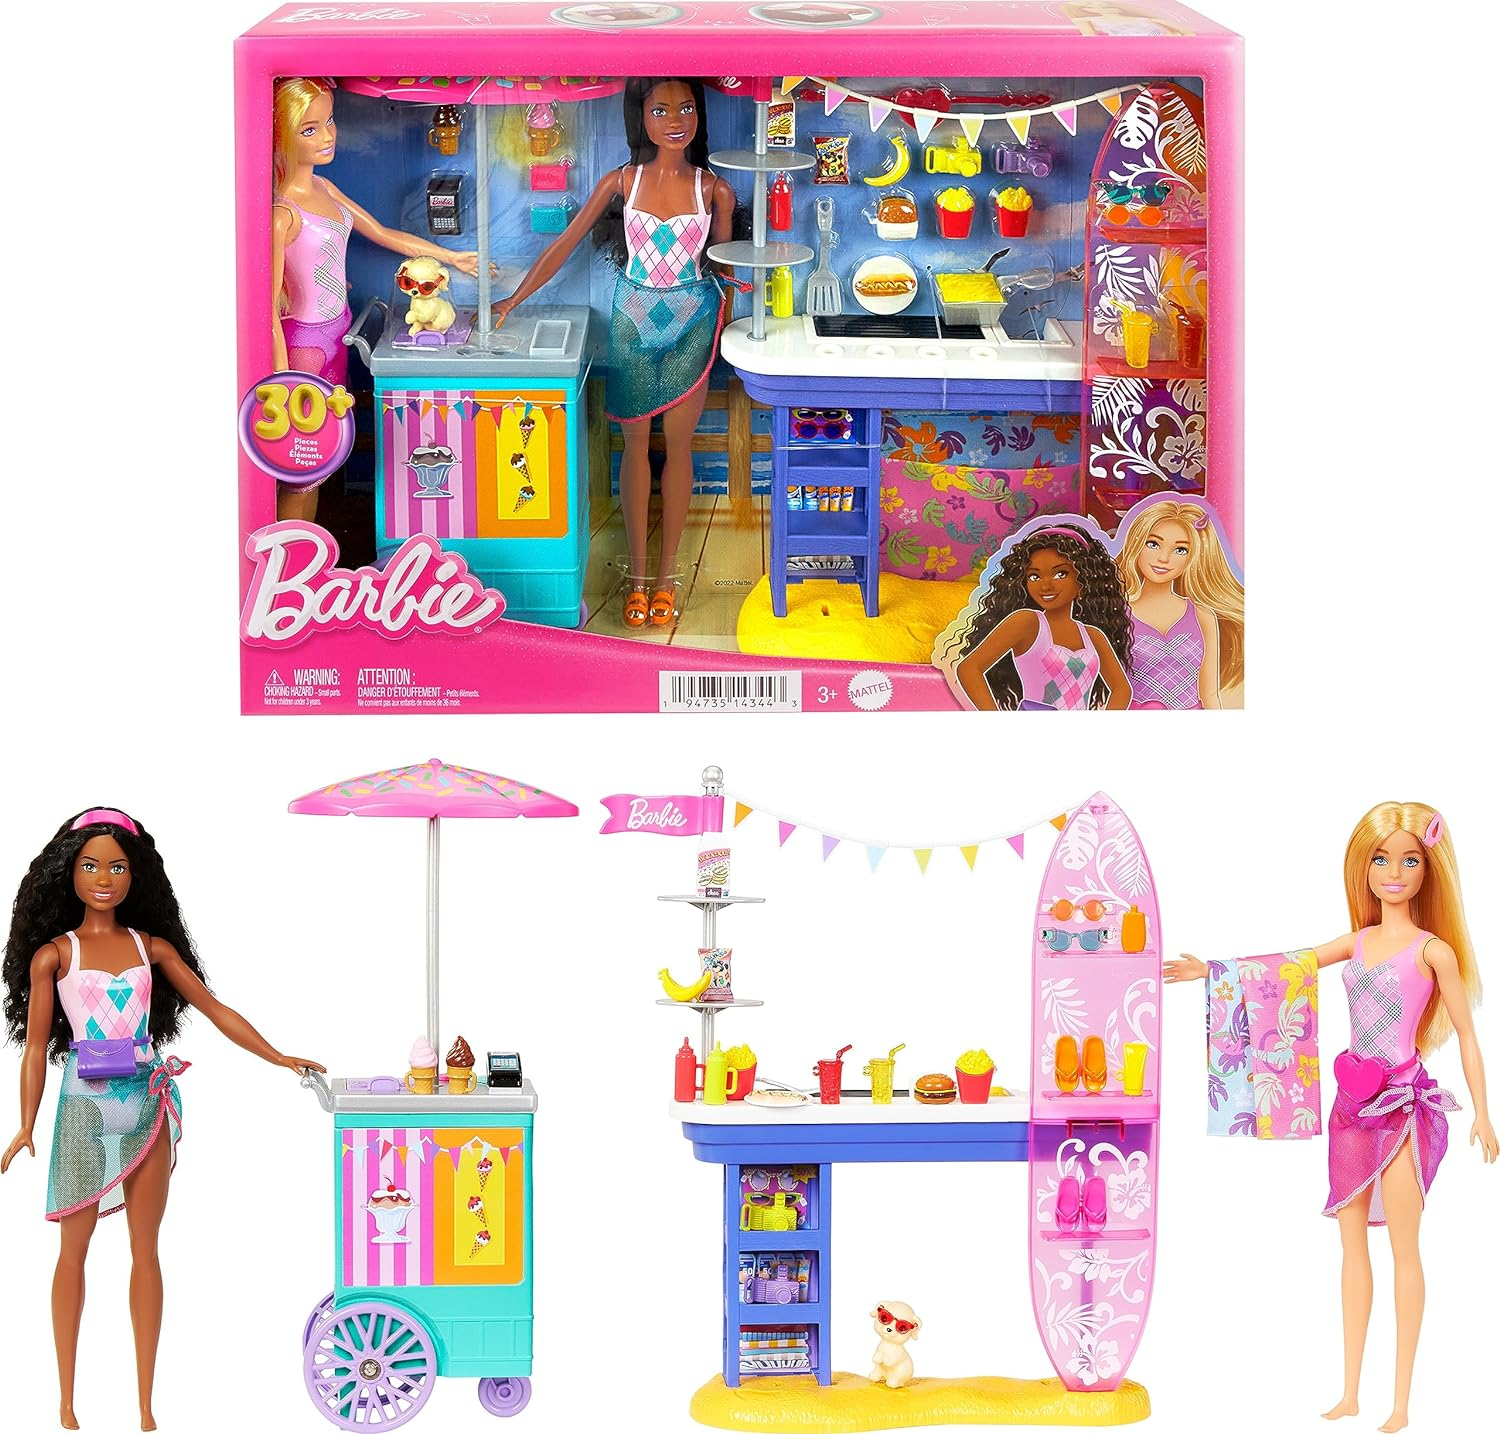 Mattel mostra carro da Barbie em tamanho real no salão do